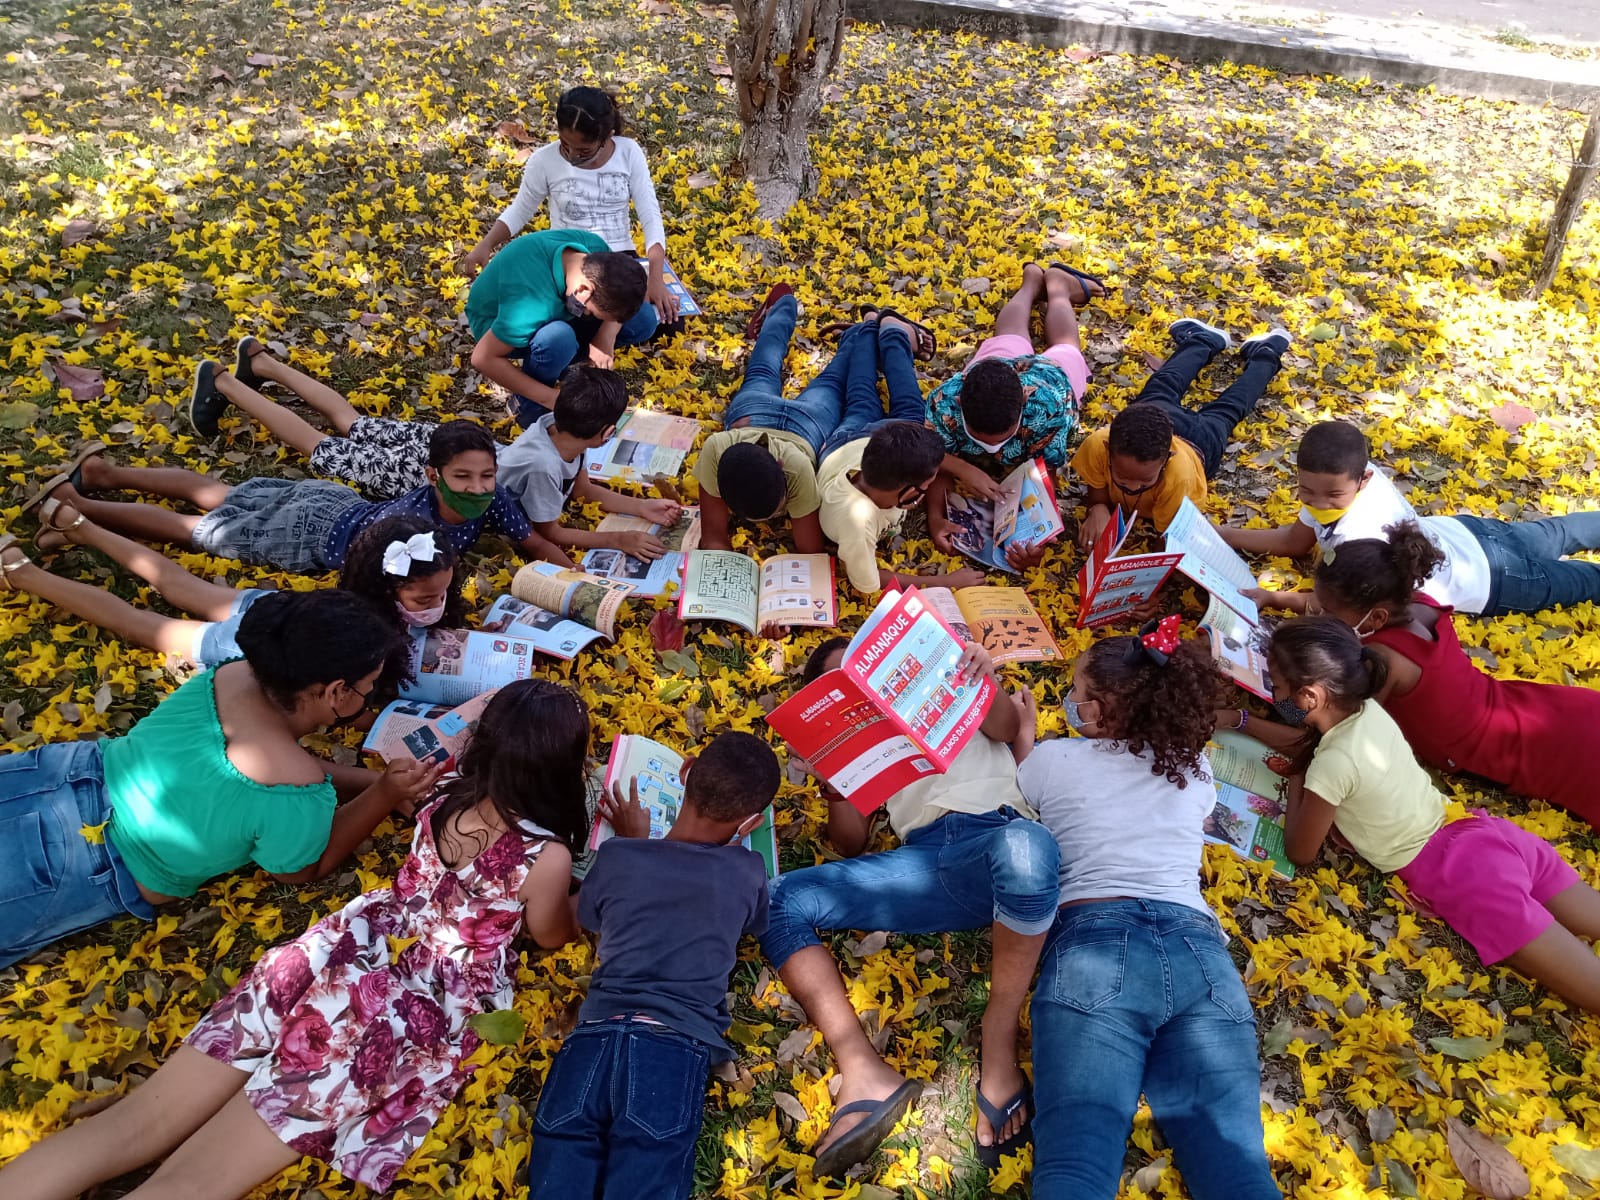 Crianças deitadas sob folhas no chão do jardim conferindo o conteúdo do almanaque.